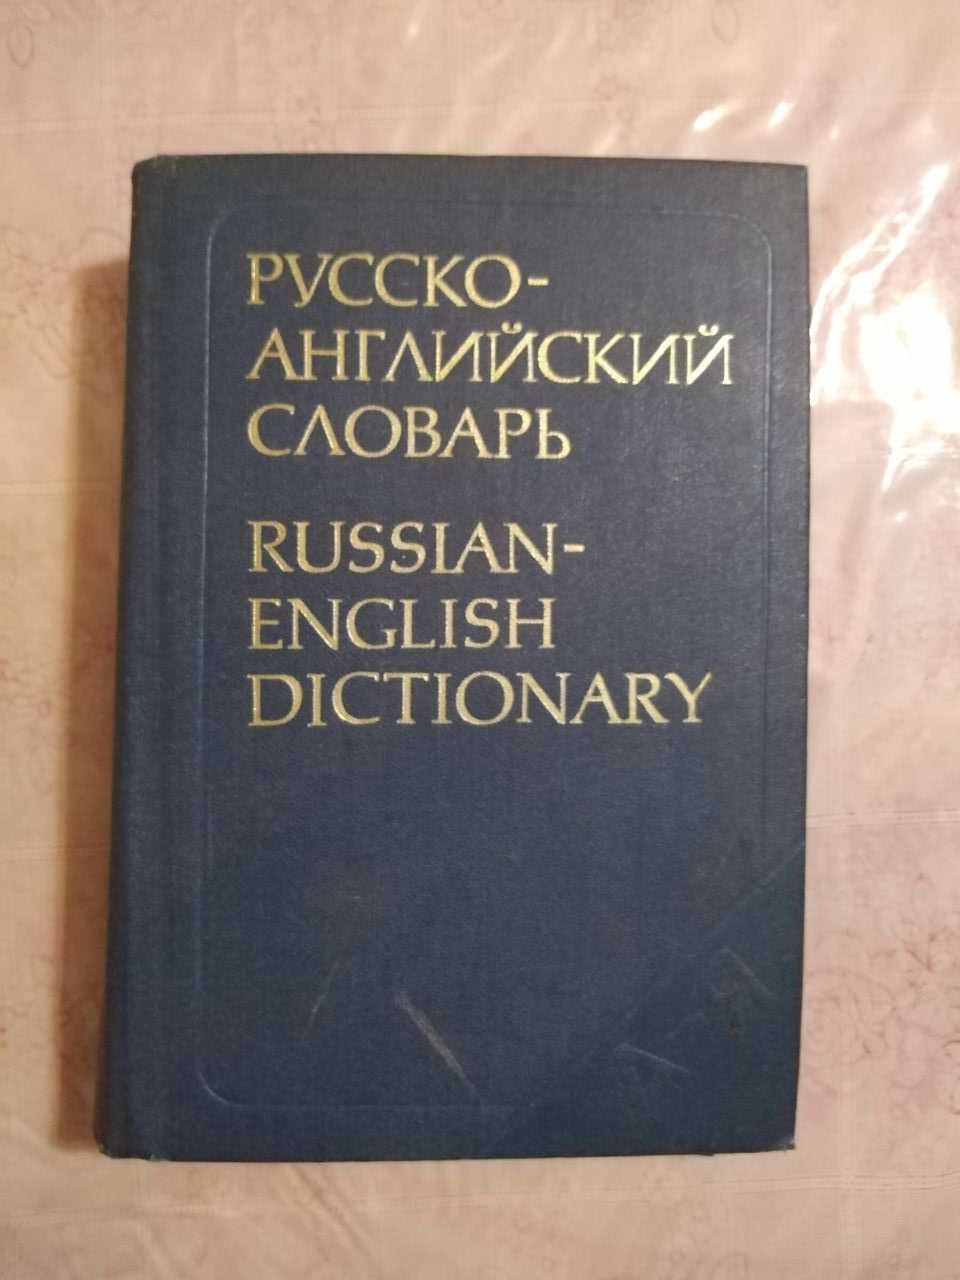 Продам русско-английский словарь